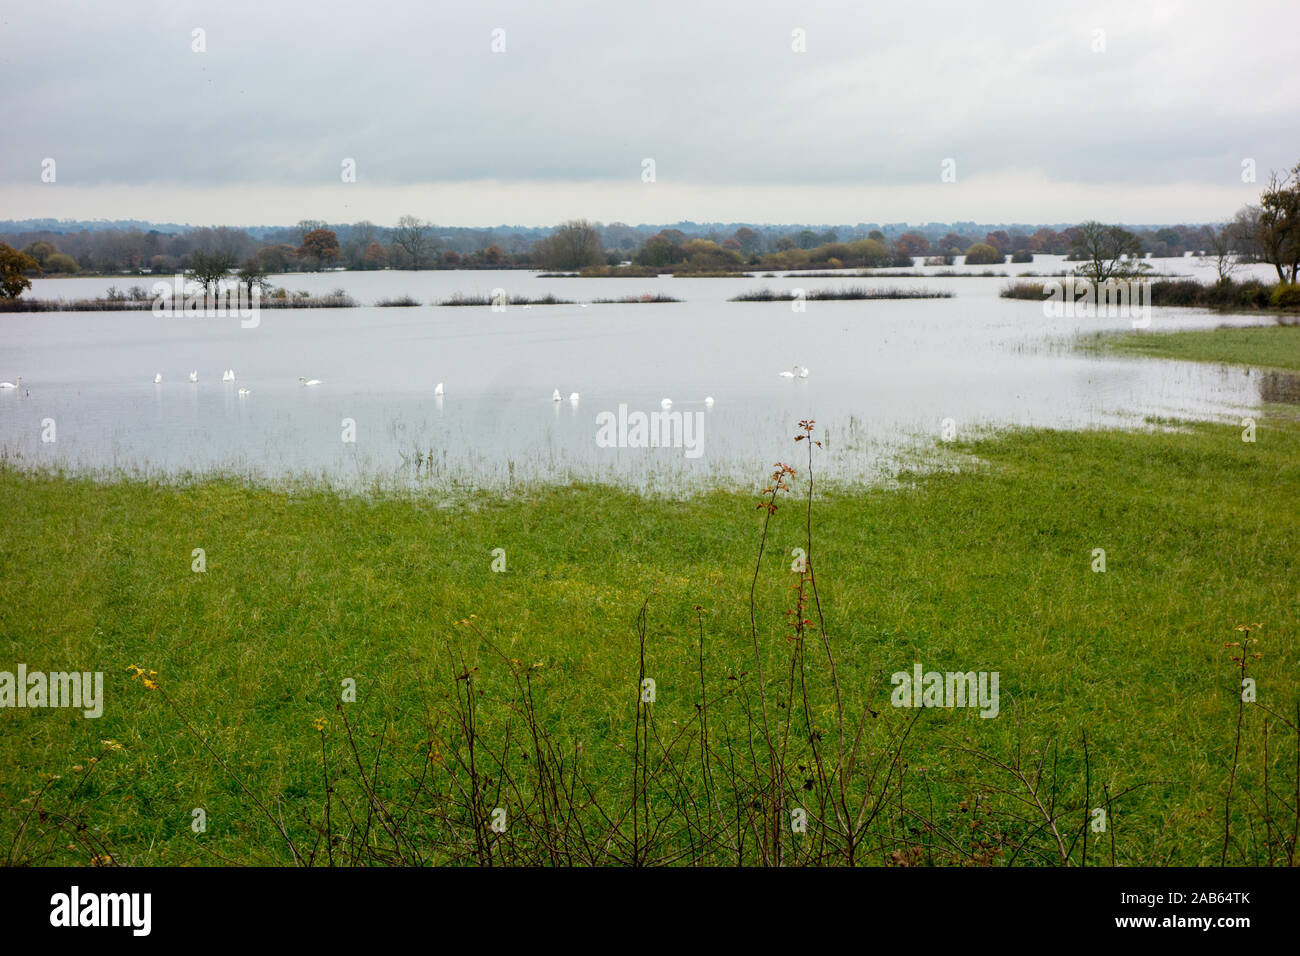 Les terres agricoles inondées pendant les tempêtes, Cheshire et les fortes pluies de l'automne 2019 à l'inondation sur la frontière galloise à l'anglais et l'Hespérie Holt Banque D'Images